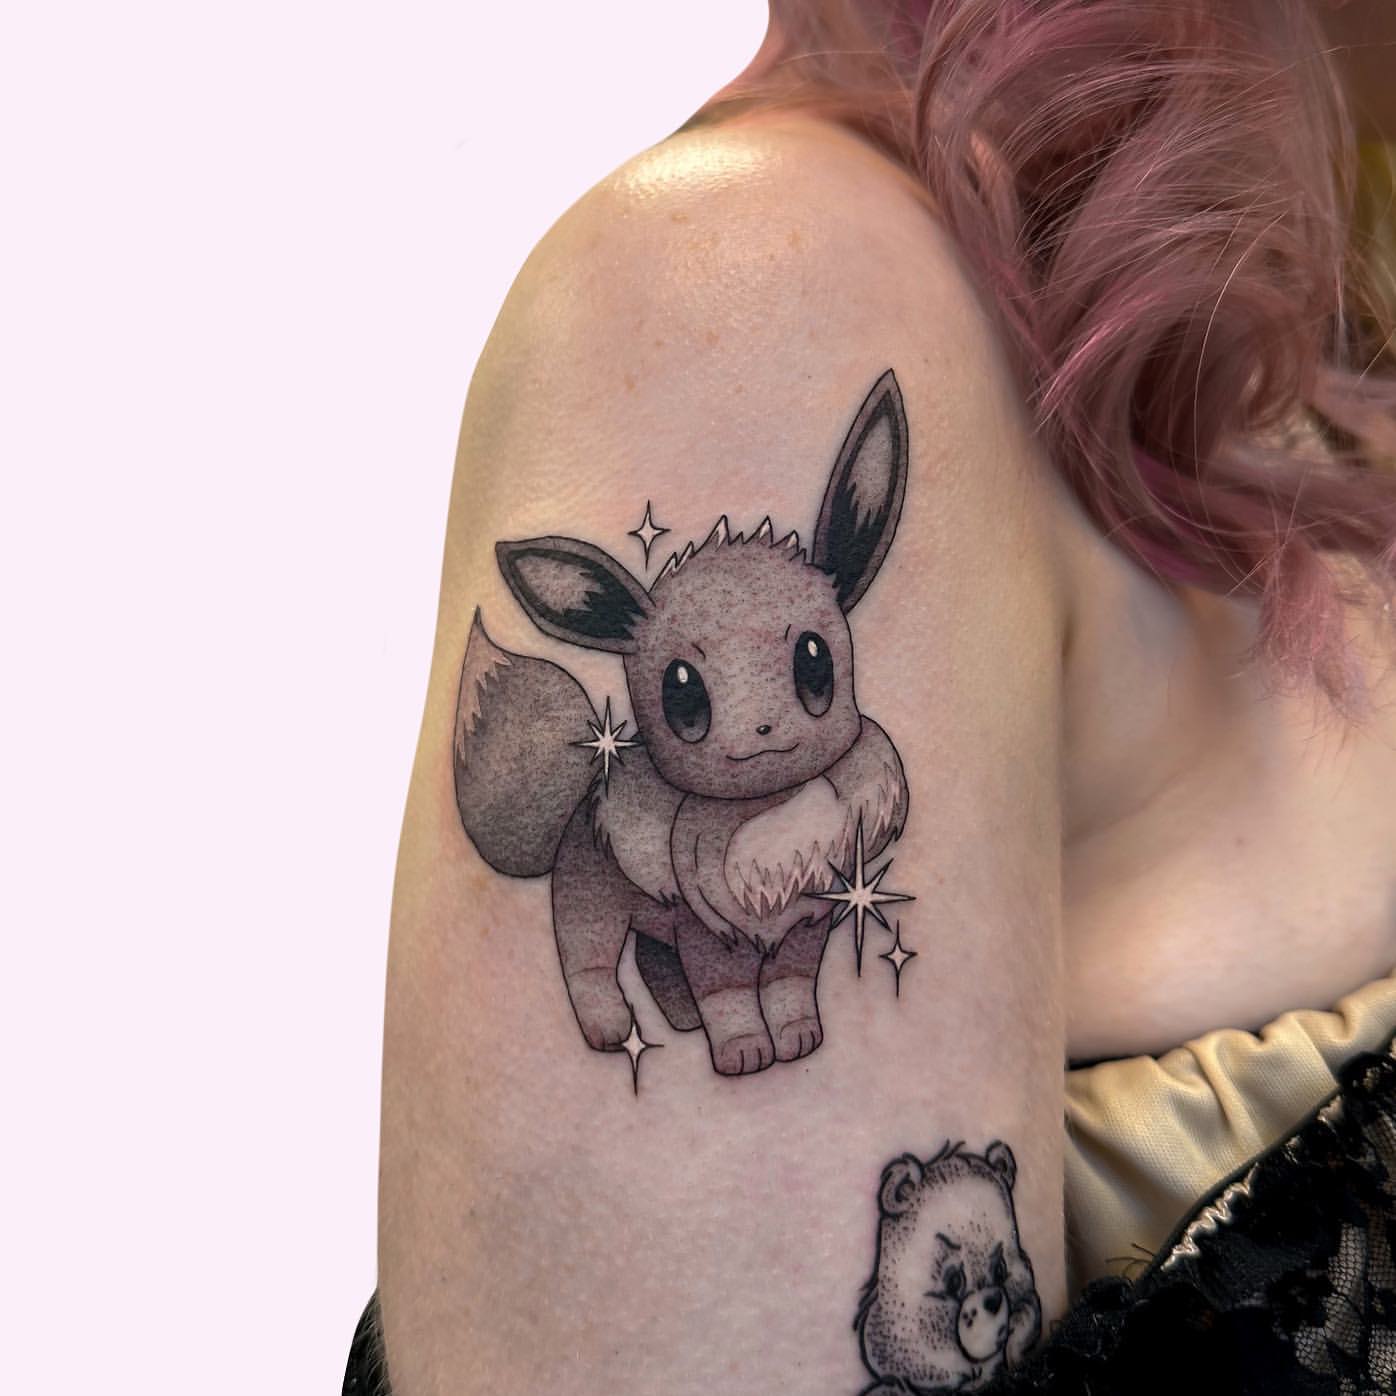 Peut-on avoir l'air d'un dur avec un tatouage Pokémon ?